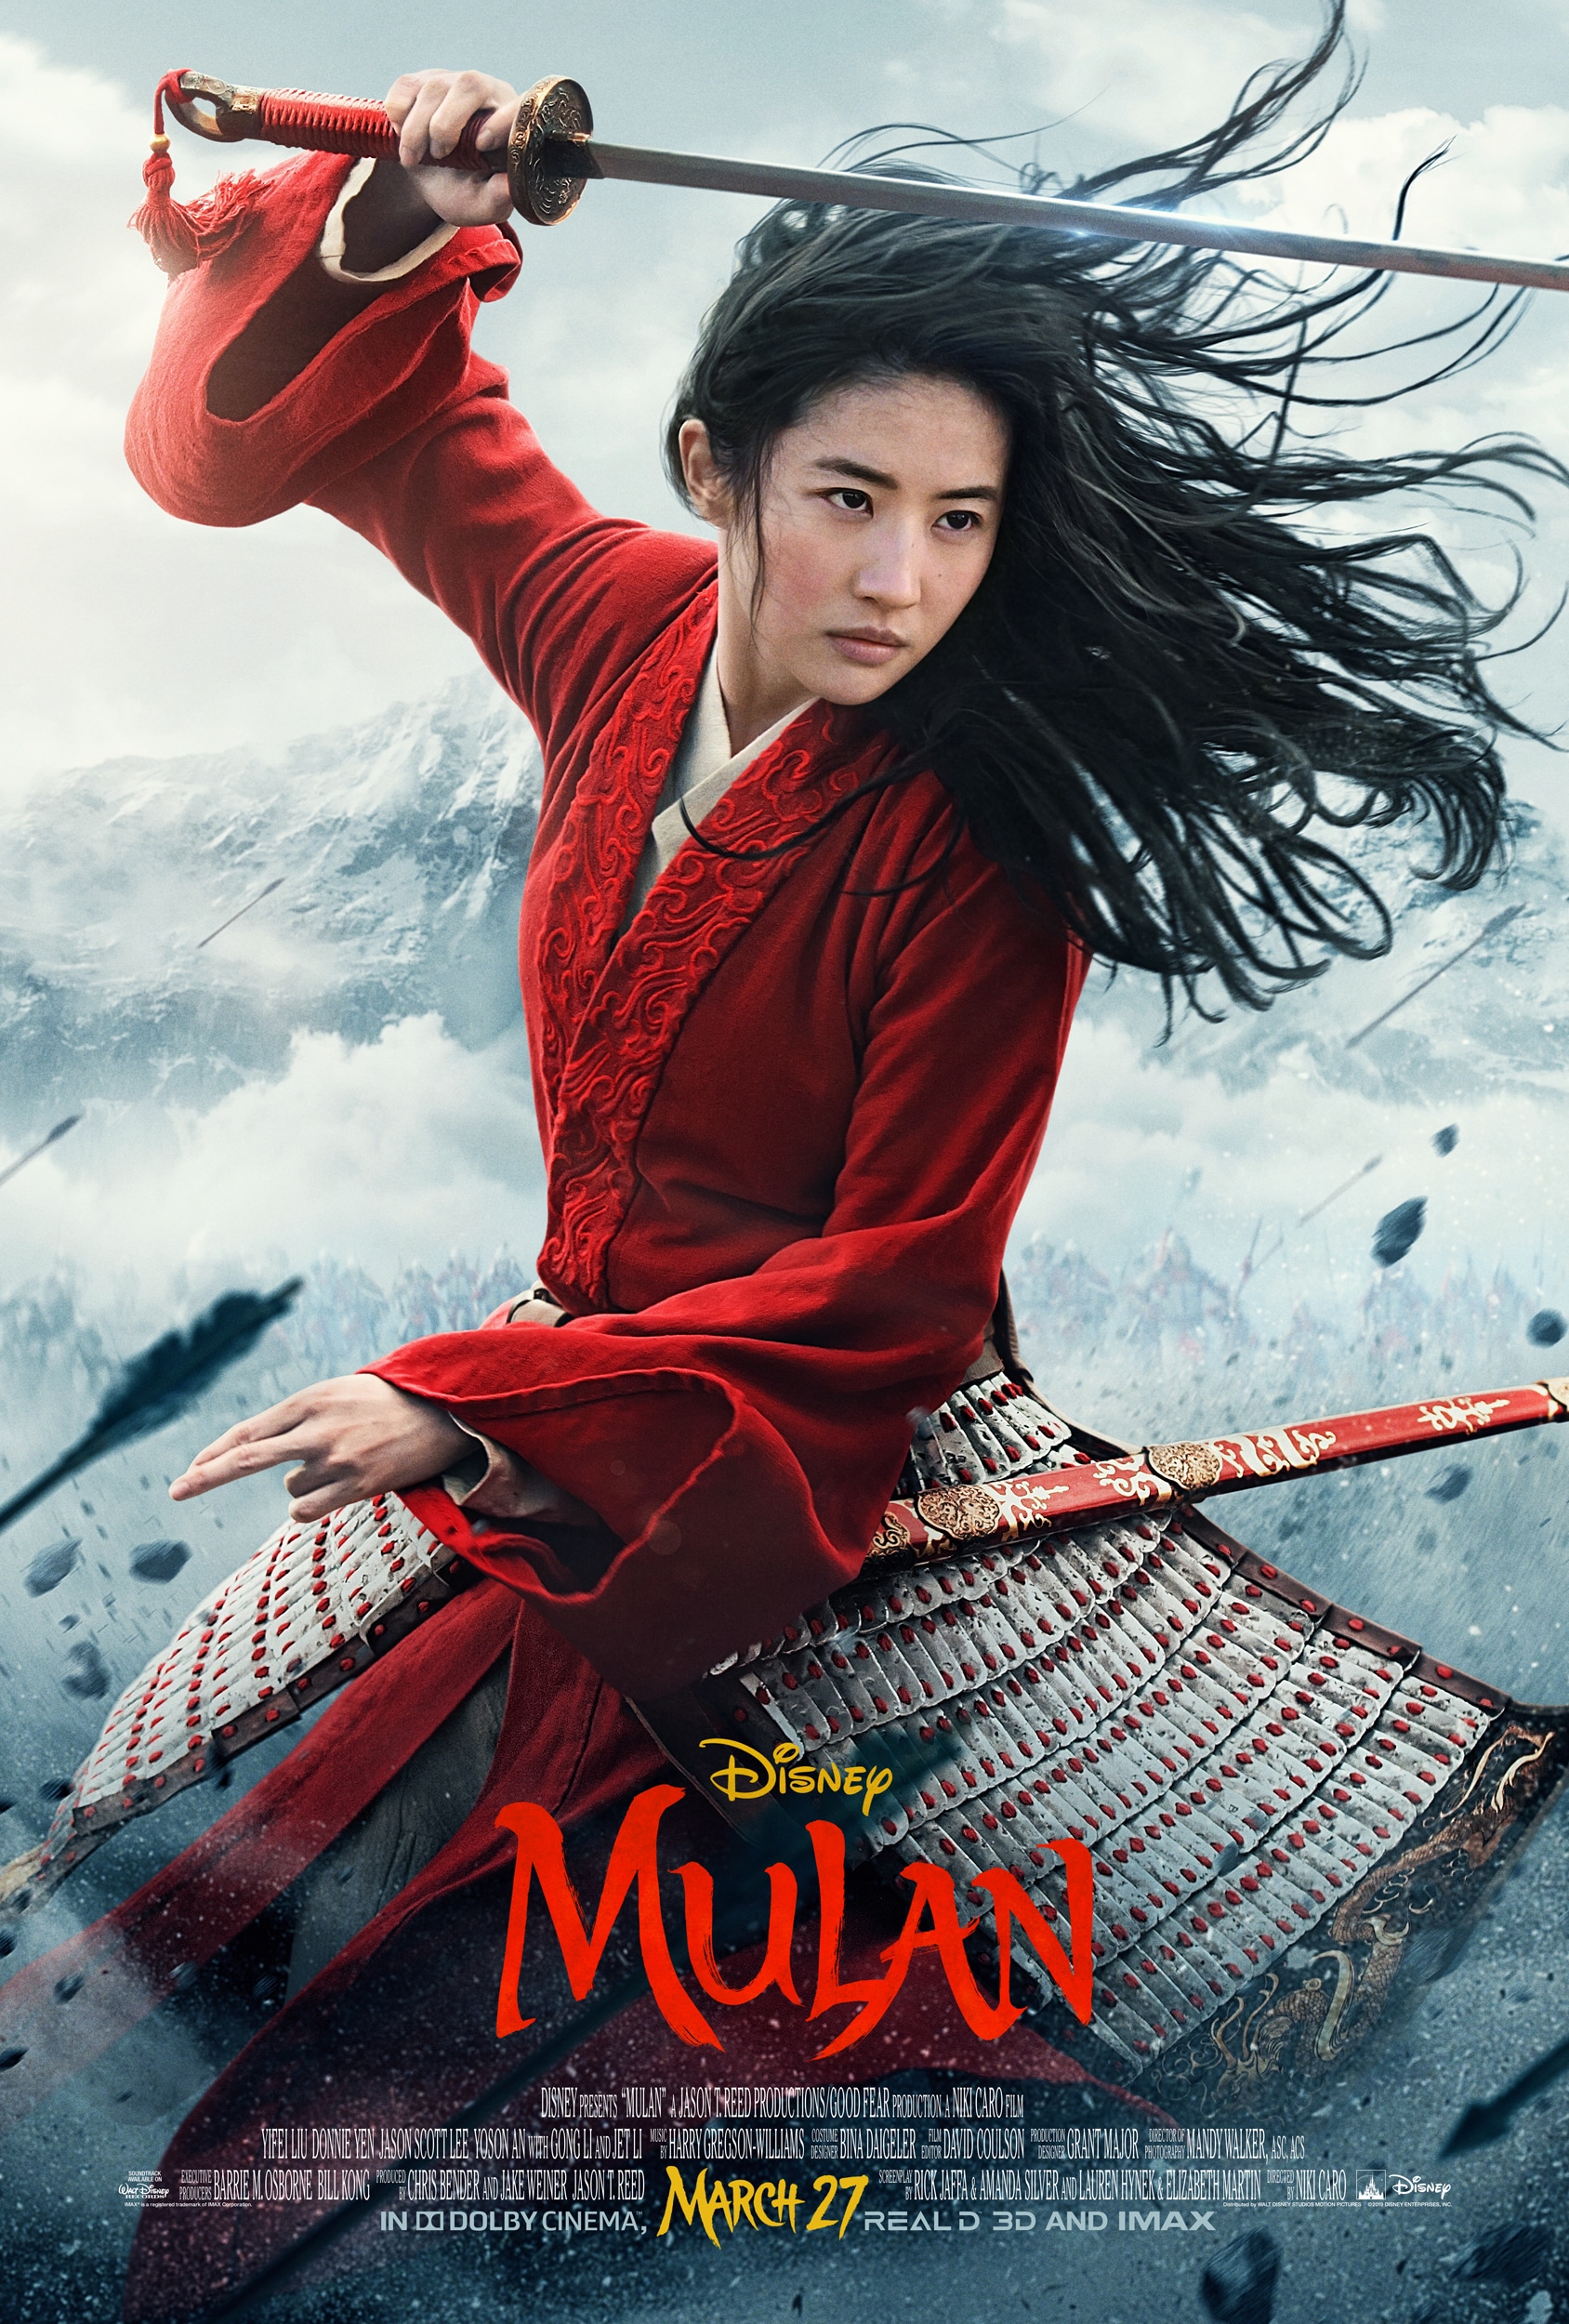 Disney's Mulan Poster